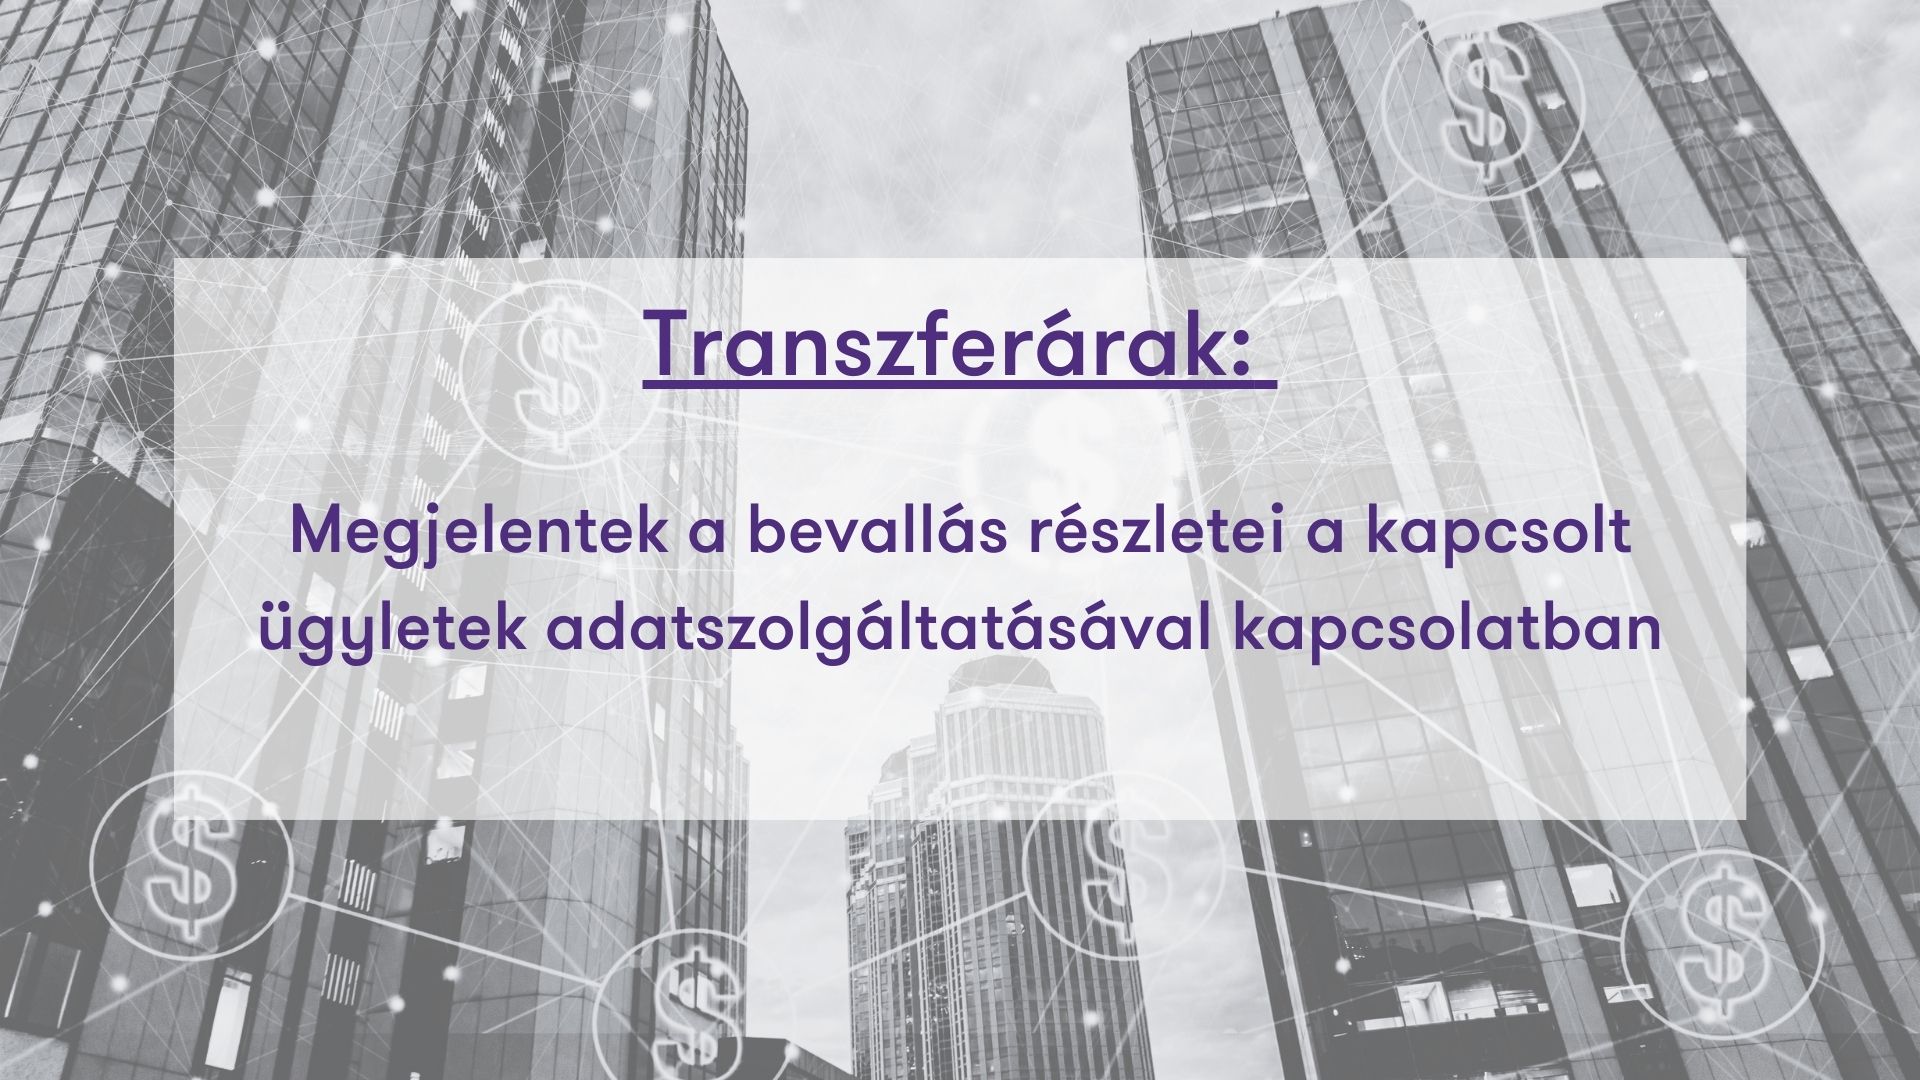 Transzferárak: megjelentek a bevallás részletei a kapcsolt ügyletek adatszolgáltatásával kapcsolatban